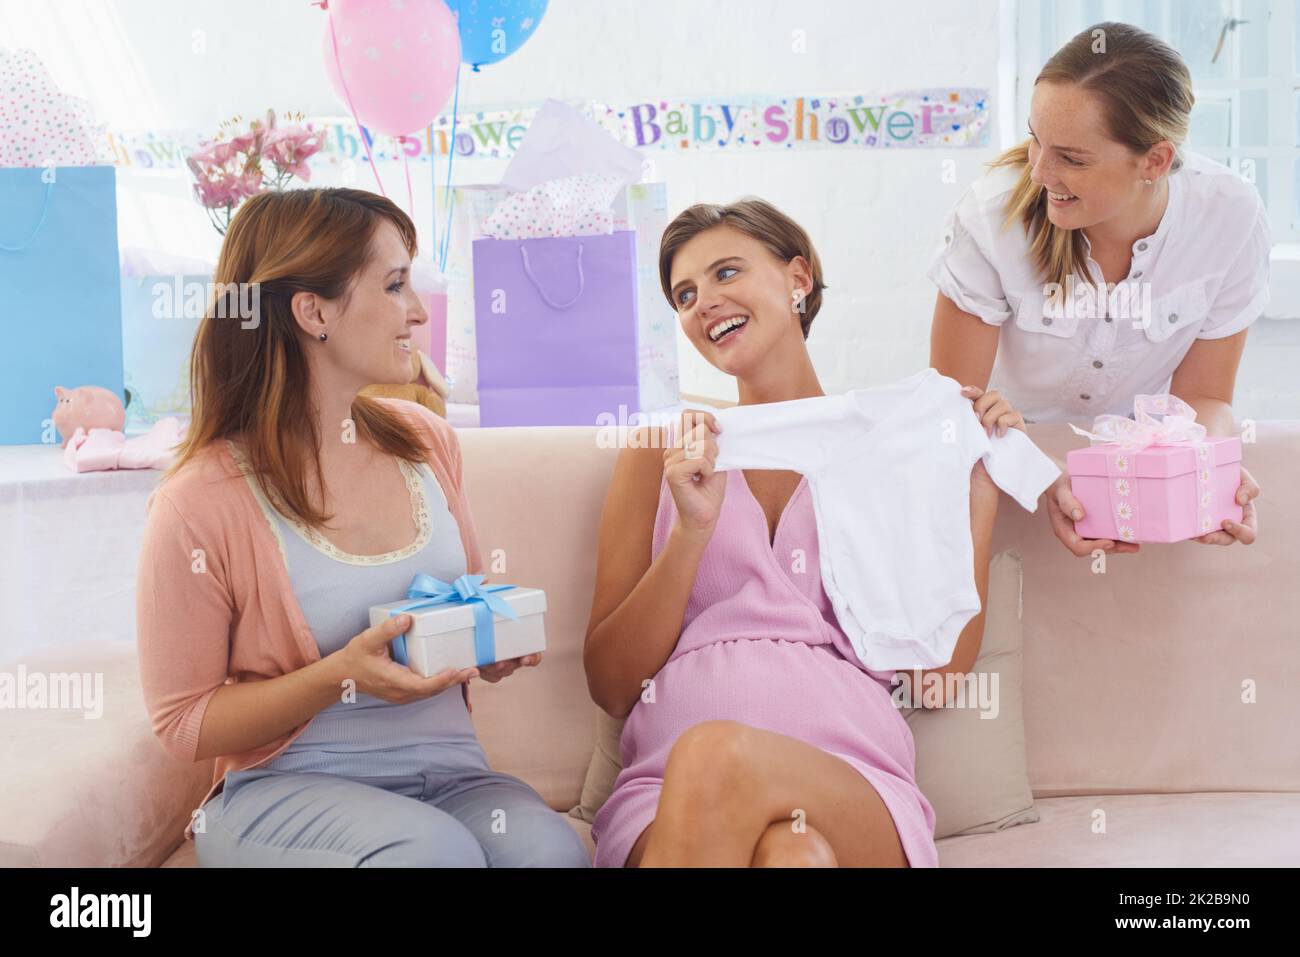 Voi ragazzi state rovinando me - e il bambino. Una giovane donna incinta che riceve regali dai suoi amici graziosi al suo babyshower. Foto Stock